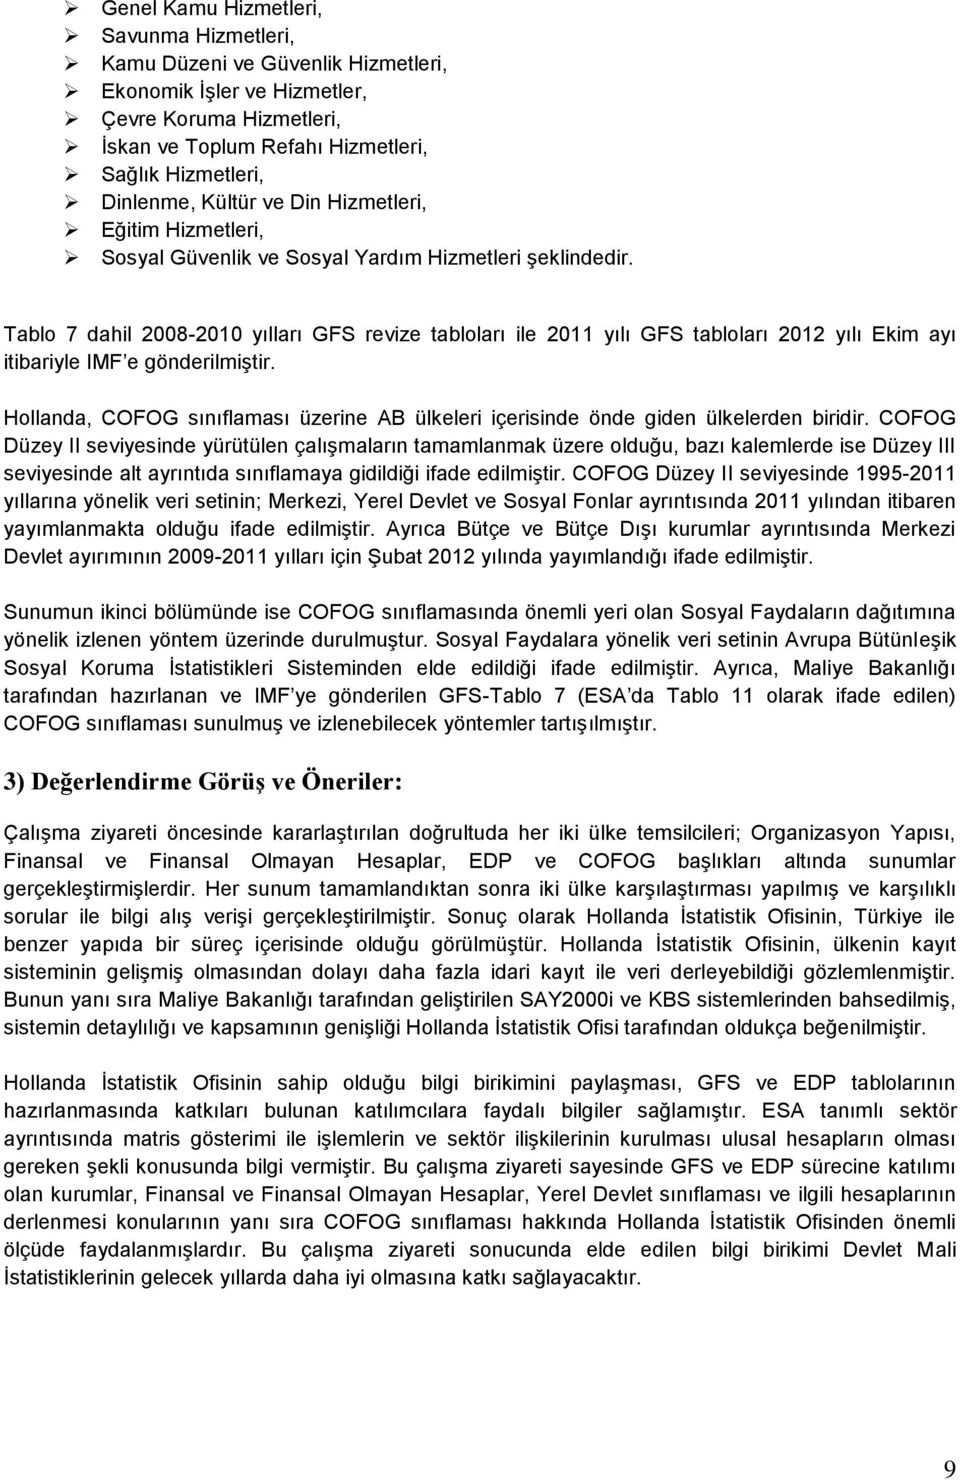 Tablo 7 dahil 2008-2010 yılları GFS revize tabloları ile 2011 yılı GFS tabloları 2012 yılı Ekim ayı itibariyle IMF e gönderilmiştir.